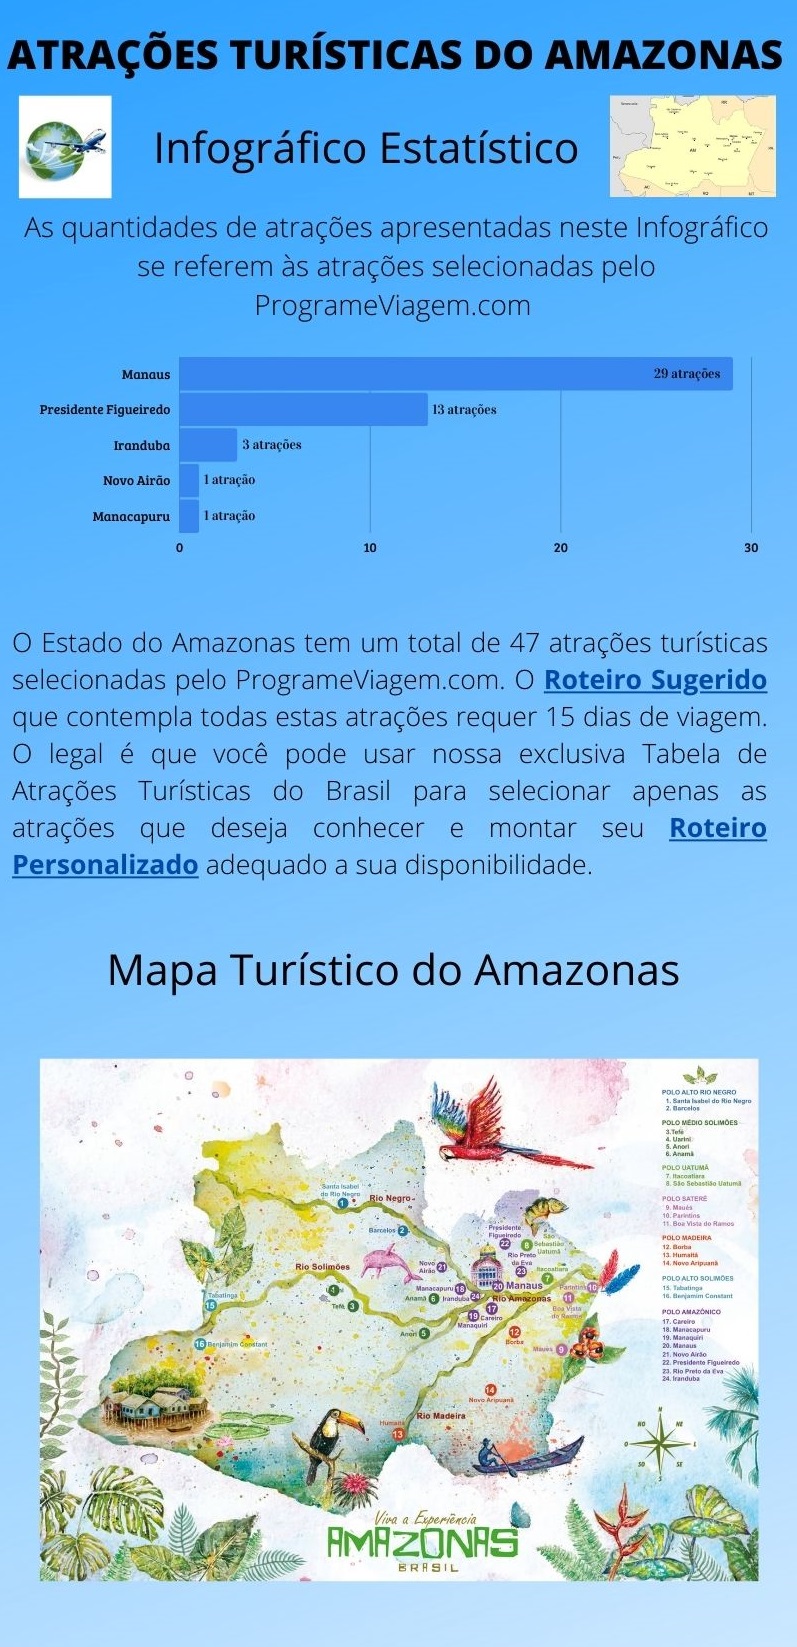 Infográfico Atrações Turísticas do Amazonas